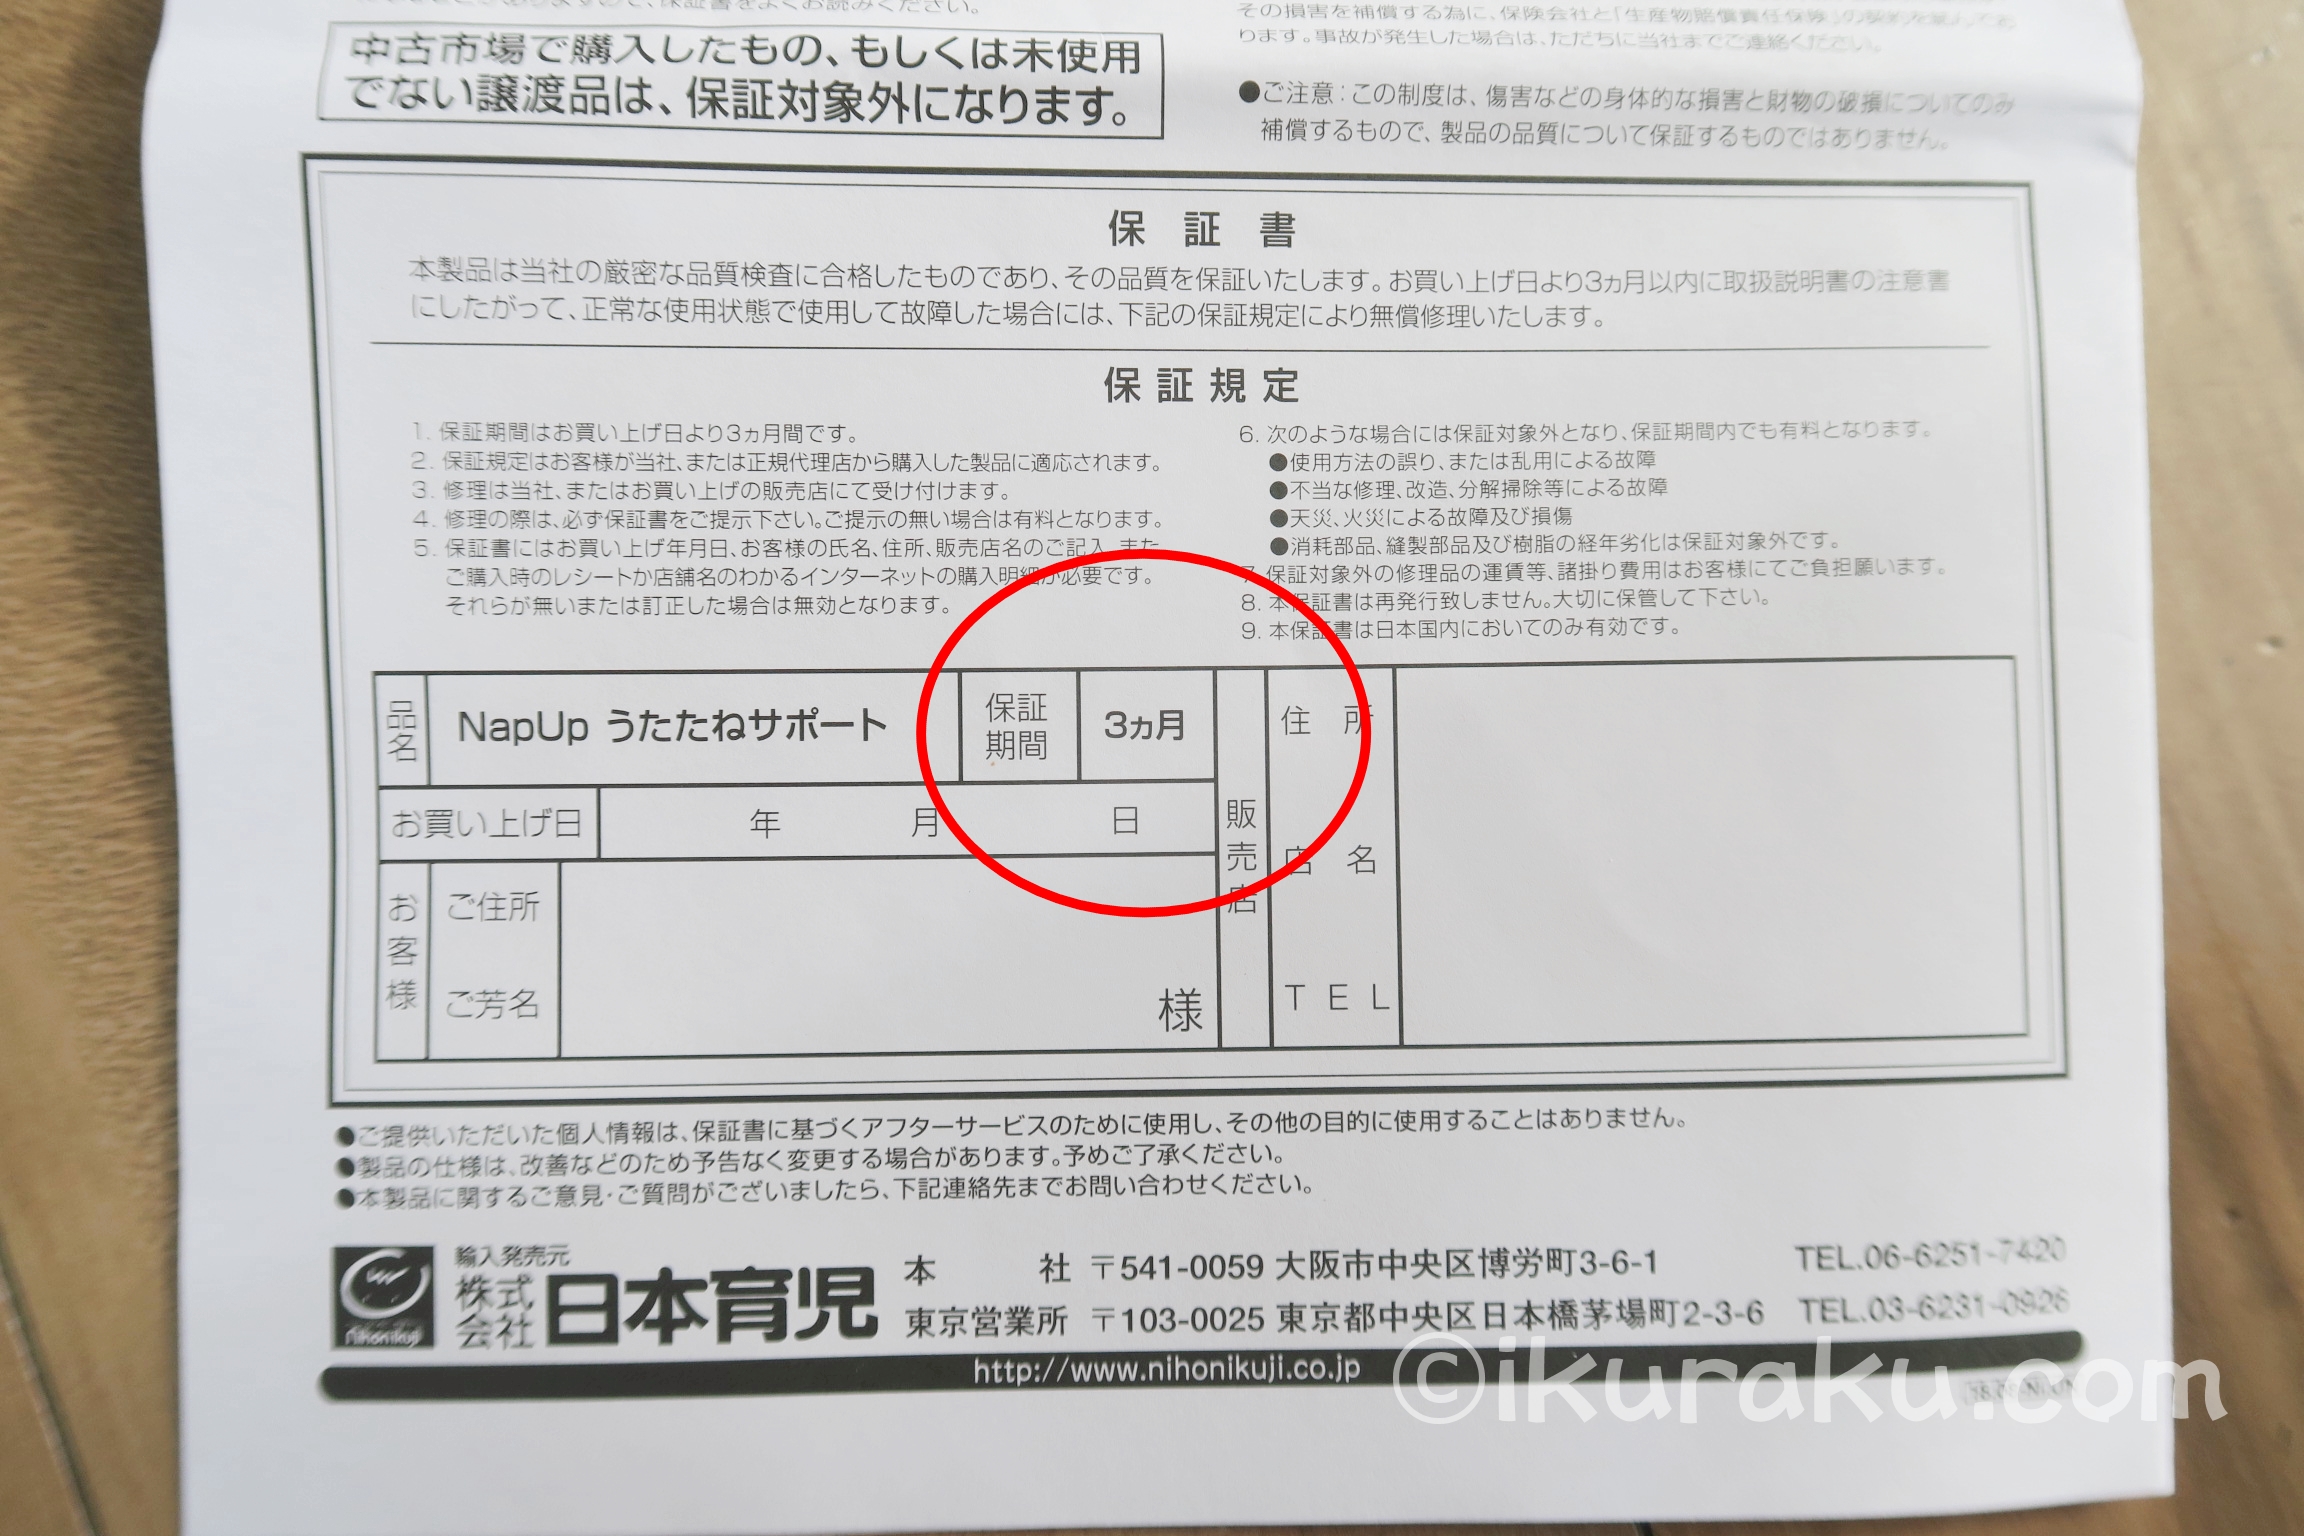 「NapUpナップアップ うたたねサポート 日本育児」の保証期間は3か月